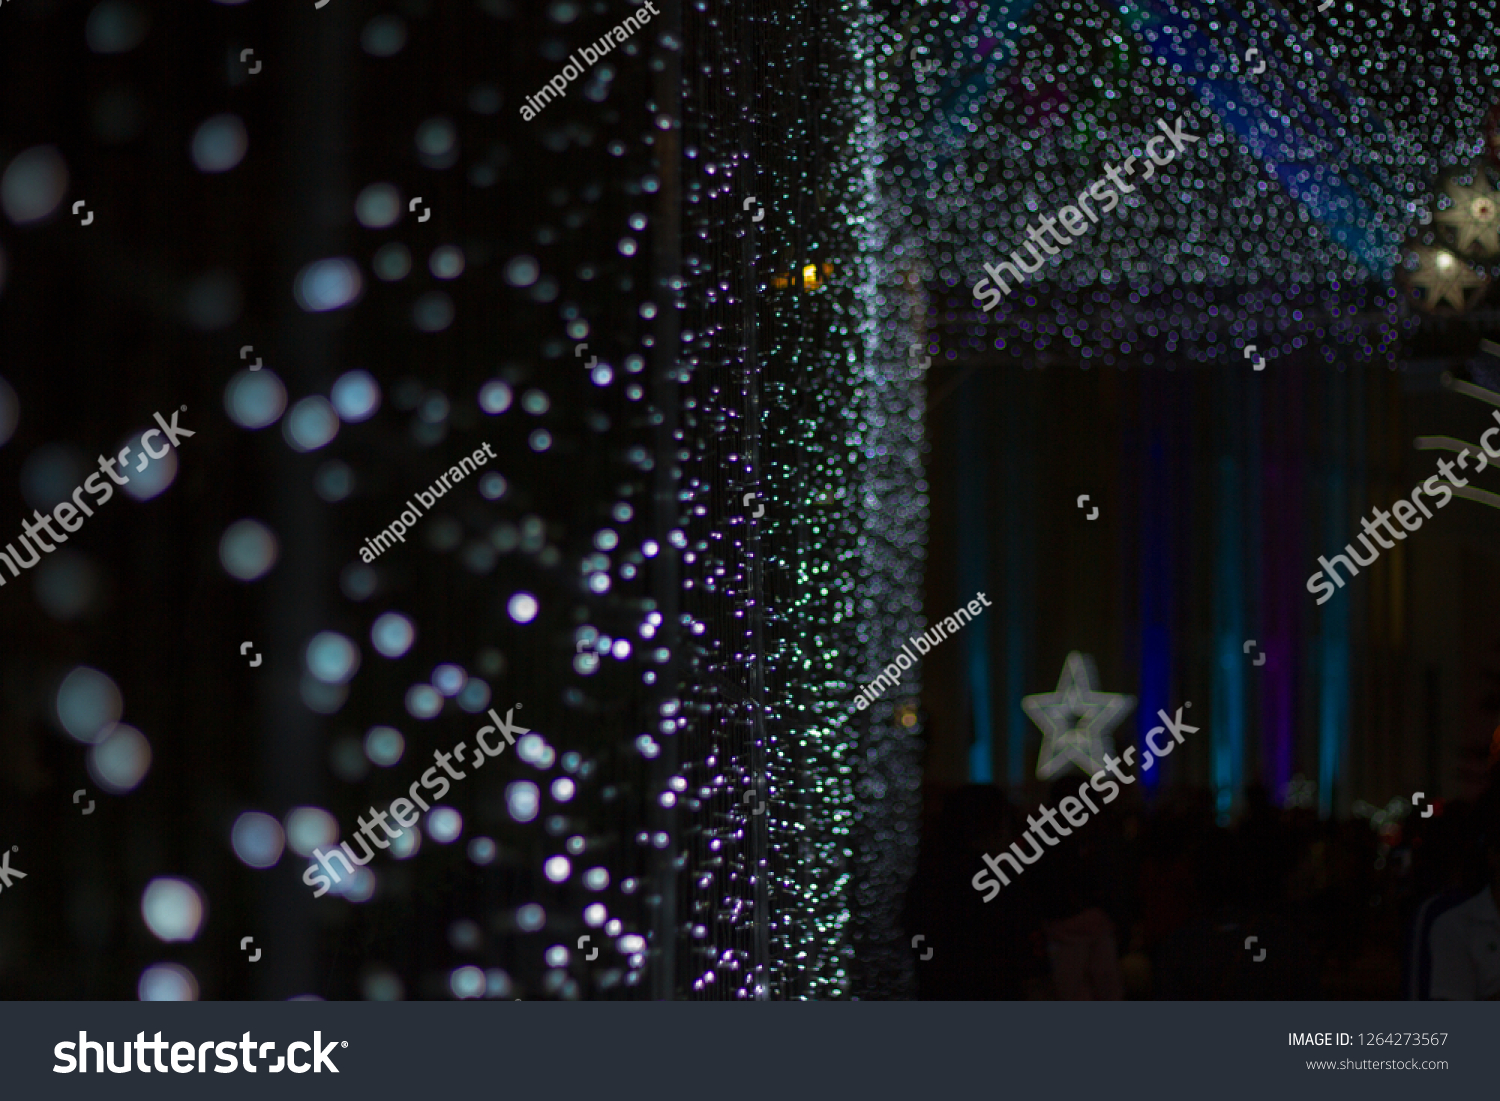 Chrismas Festival ,Light of star,light of Church,lamp of star,light of star,Tunnel of light,Star Wall in the night,Christmas light,at Ban Tha Rae,Sakon Nakhon,Thailand. #1264273567